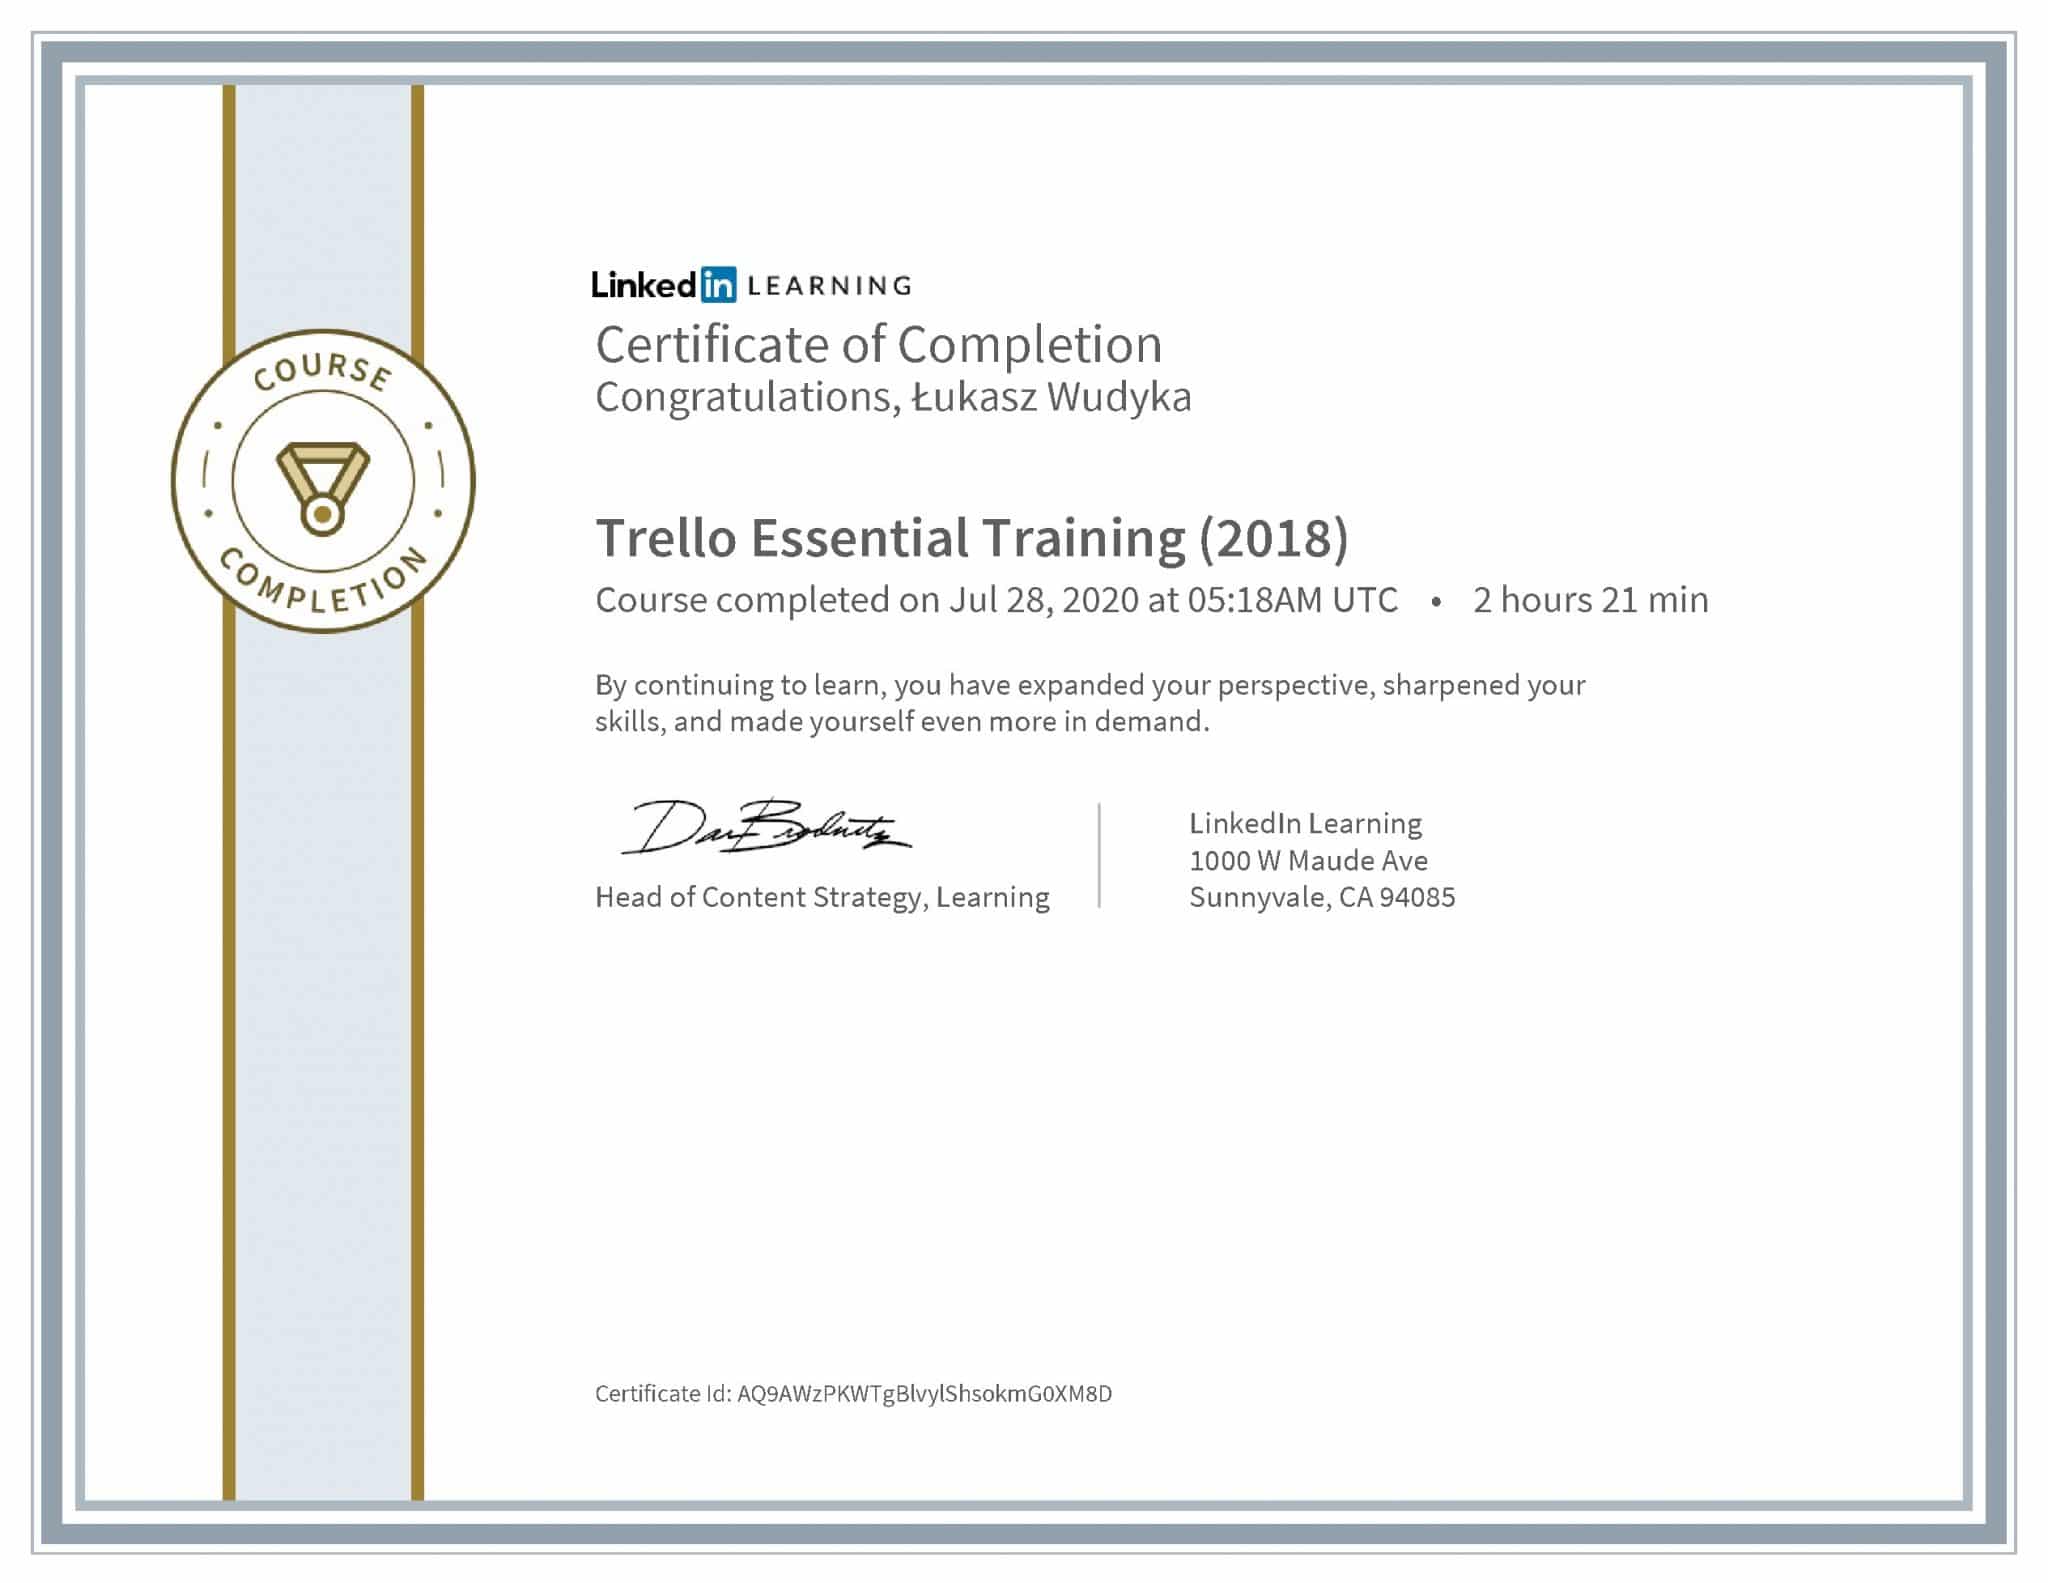 Łukasz Wudyka certyfikat LinkedIn Trello Essential Training (2018)